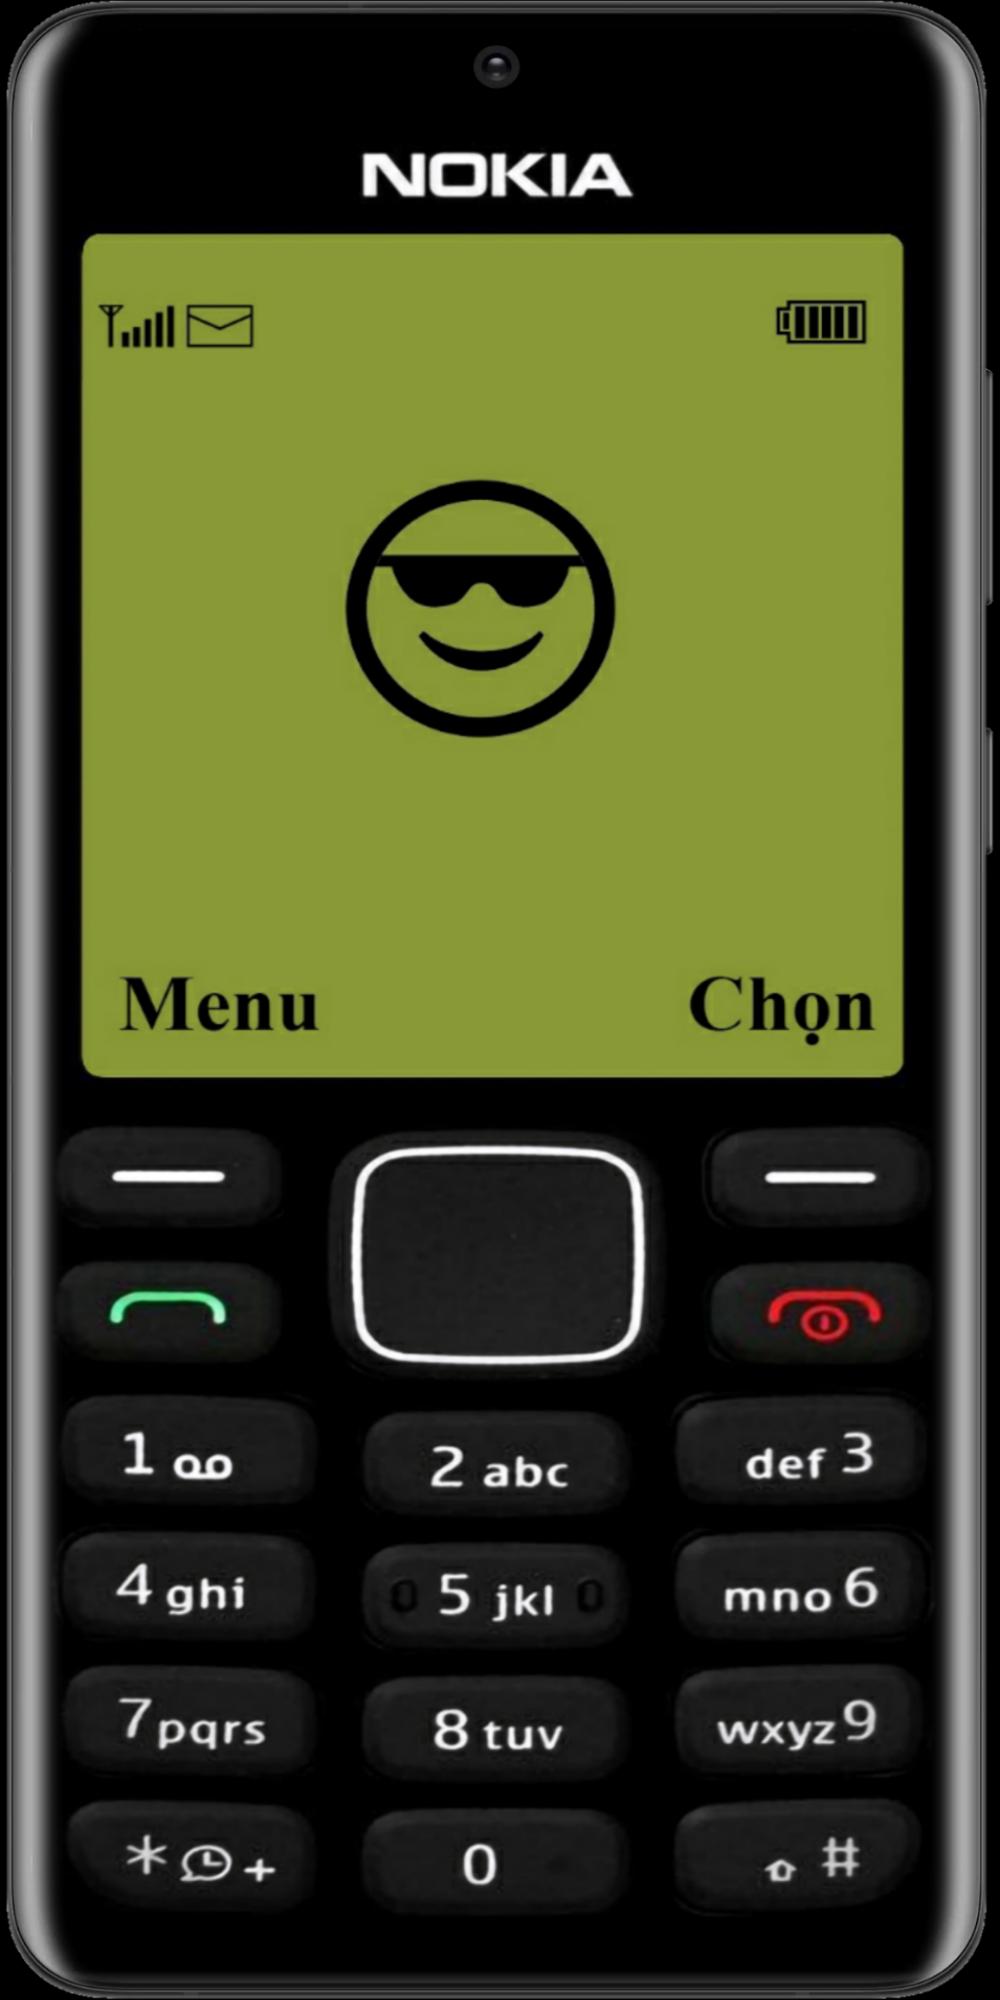 Hãy tưởng tượng mình được trở về thời của những chiếc điện thoại Nokia cổ điển, với màn hình đen trắng và các trò chơi vô cùng đơn giản nhưng vui nhộn. Giờ đây, bạn có thể tái hiện lại tất cả những ký ức ấy với Simulator for Old Nokia.